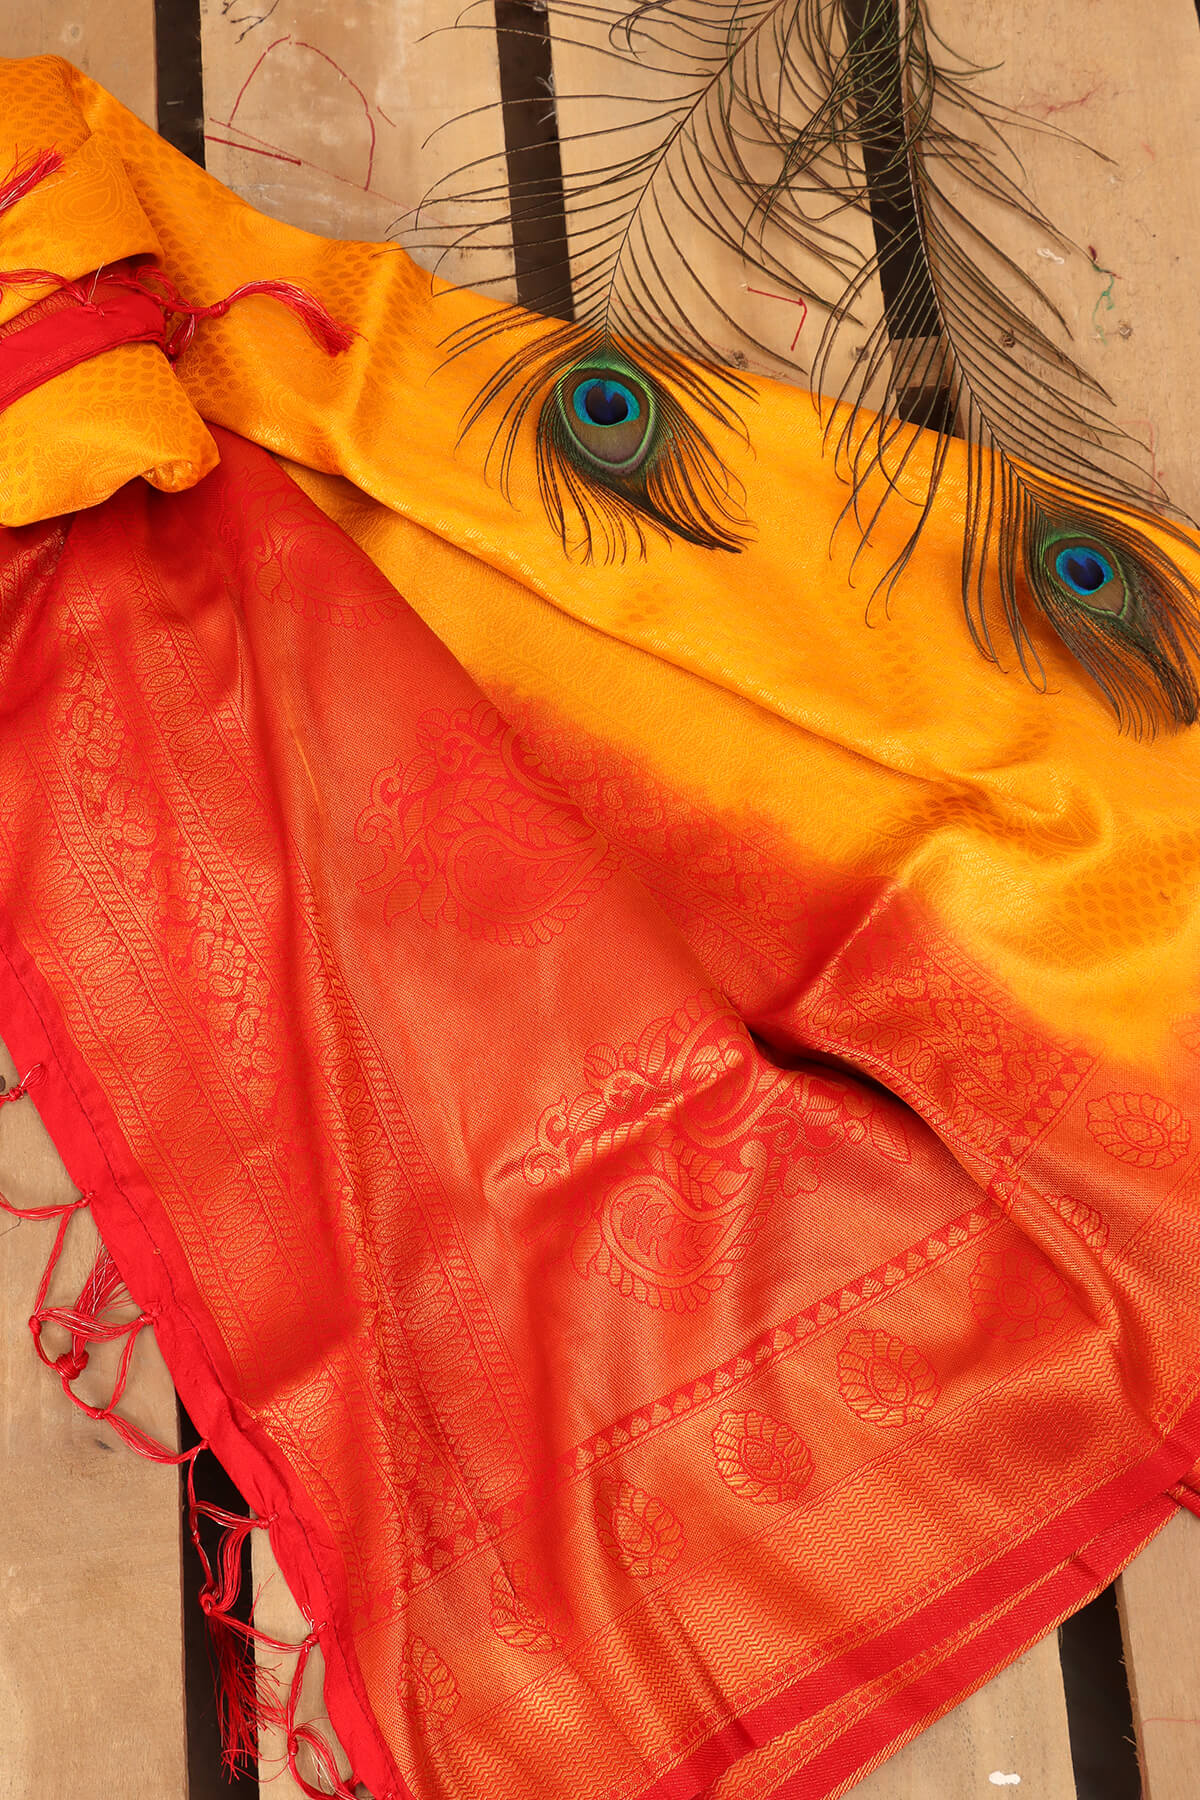 Silk Banarasi Saree - Saffron Yellow with Red